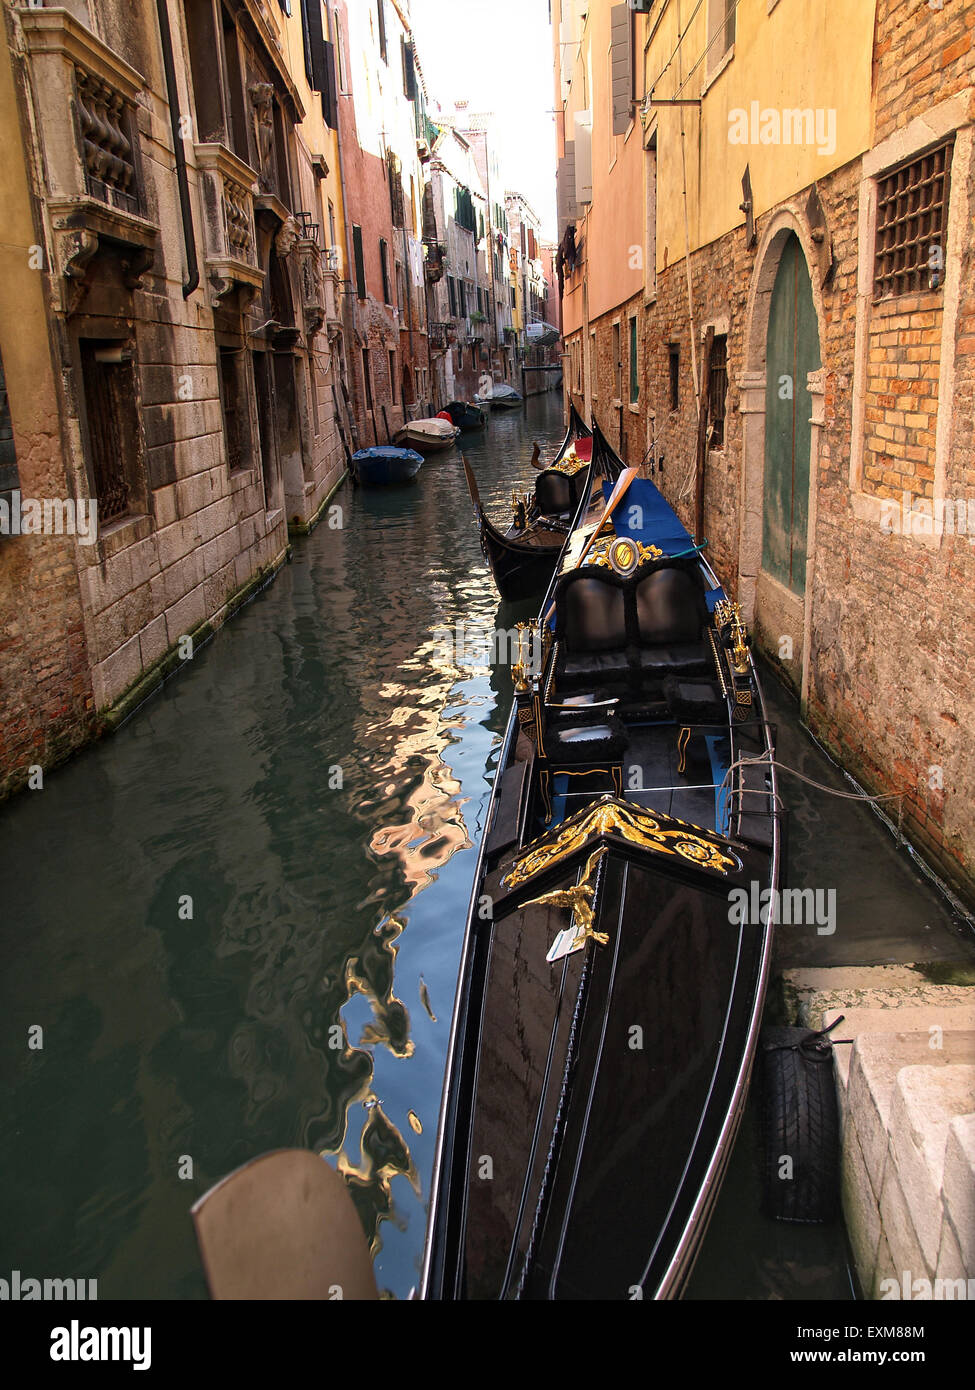 Blick auf eine leere Gondel vertäut in einem engen Kanal in Venedig mit schönen Häusern an den Seiten. Venedig. Italien. Stockfoto